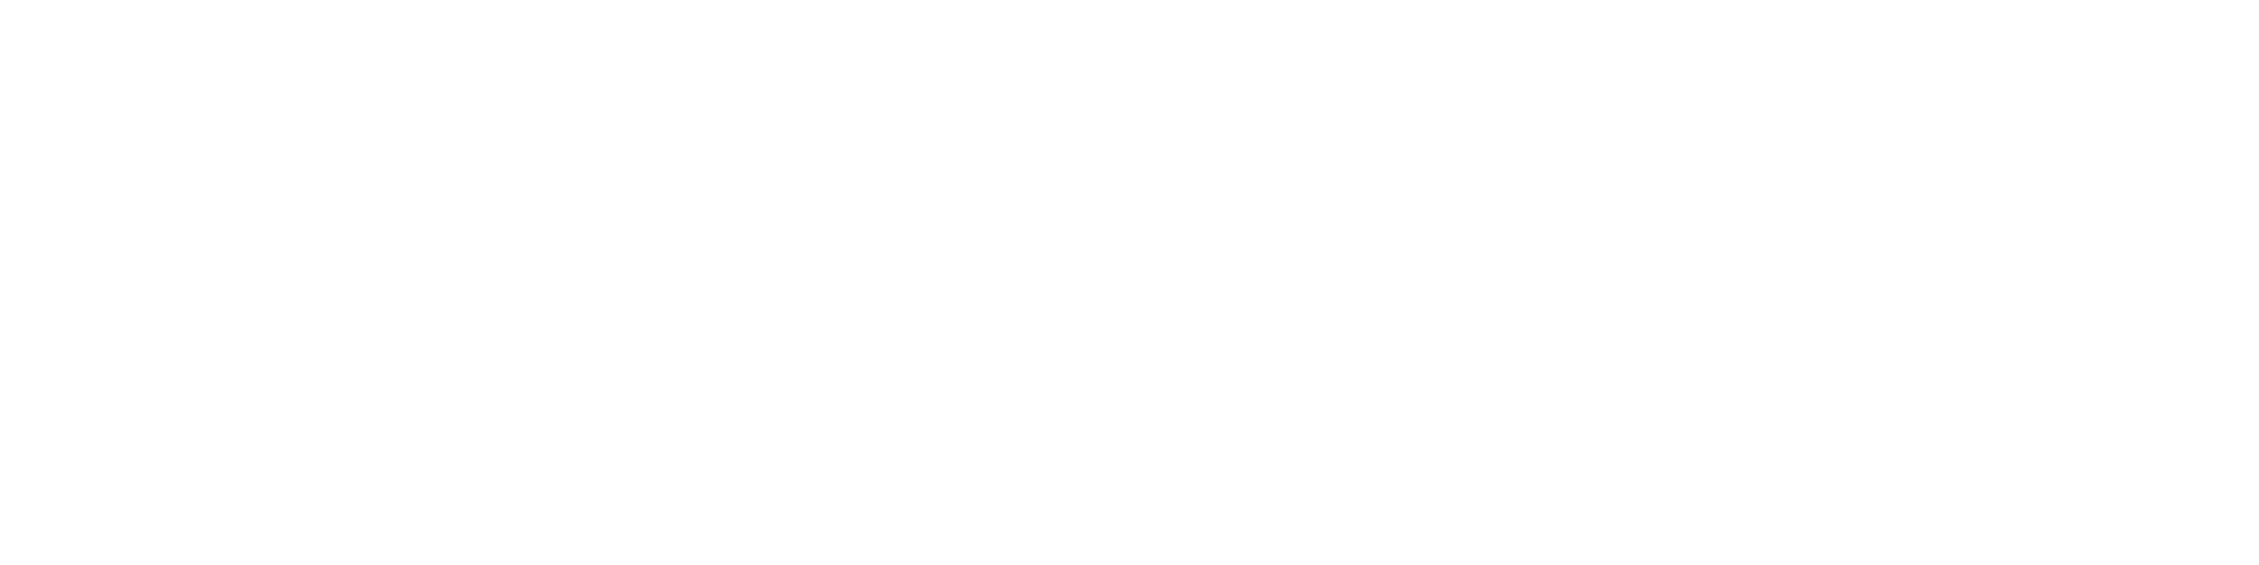 sunova logo